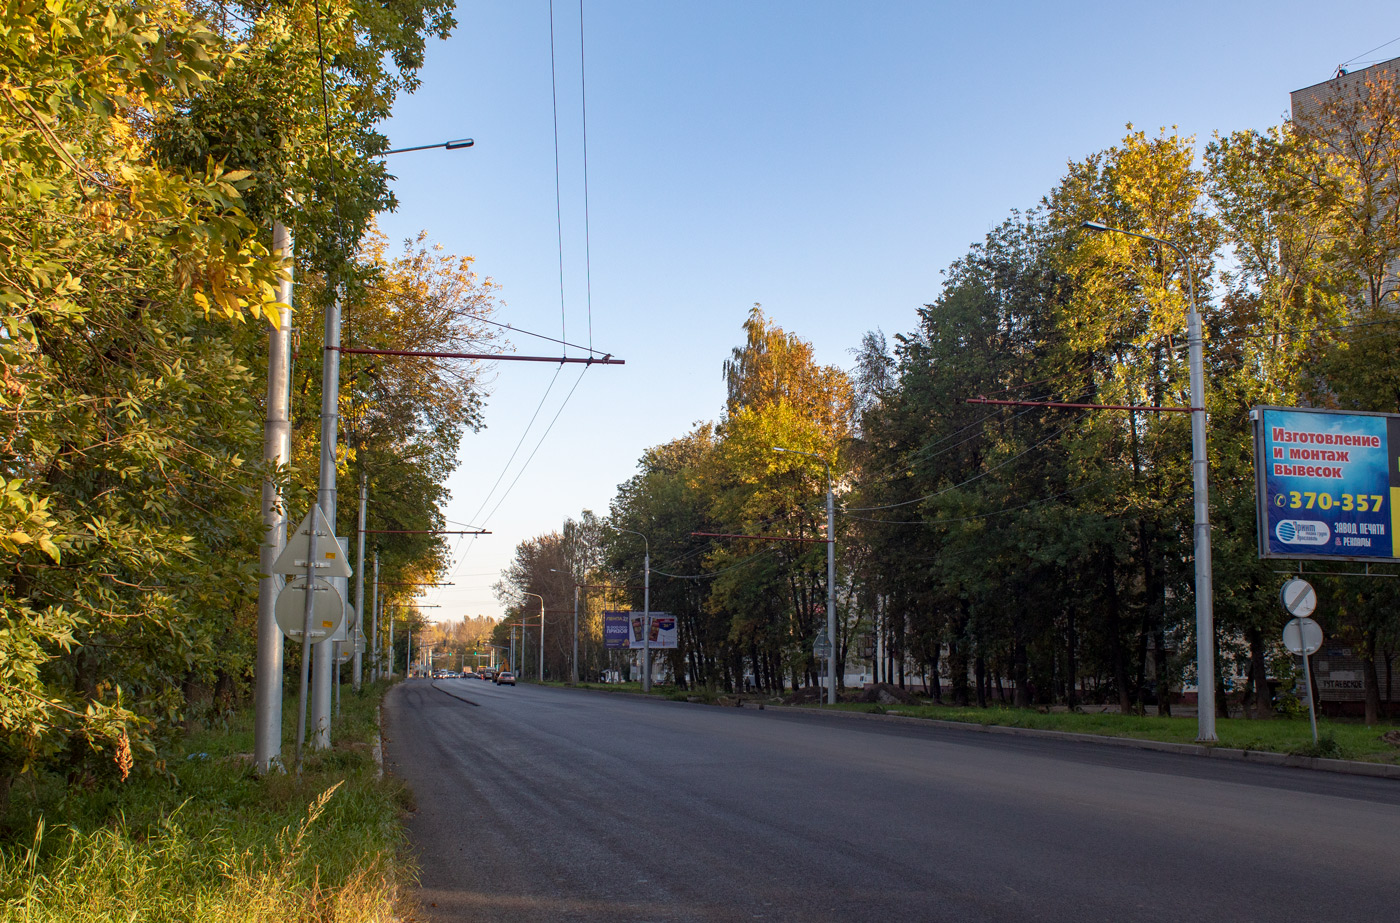 雅羅斯拉夫爾 — Reconstruction of tutaevsky road 2019-2020; 雅羅斯拉夫爾 — Trolleybus lines